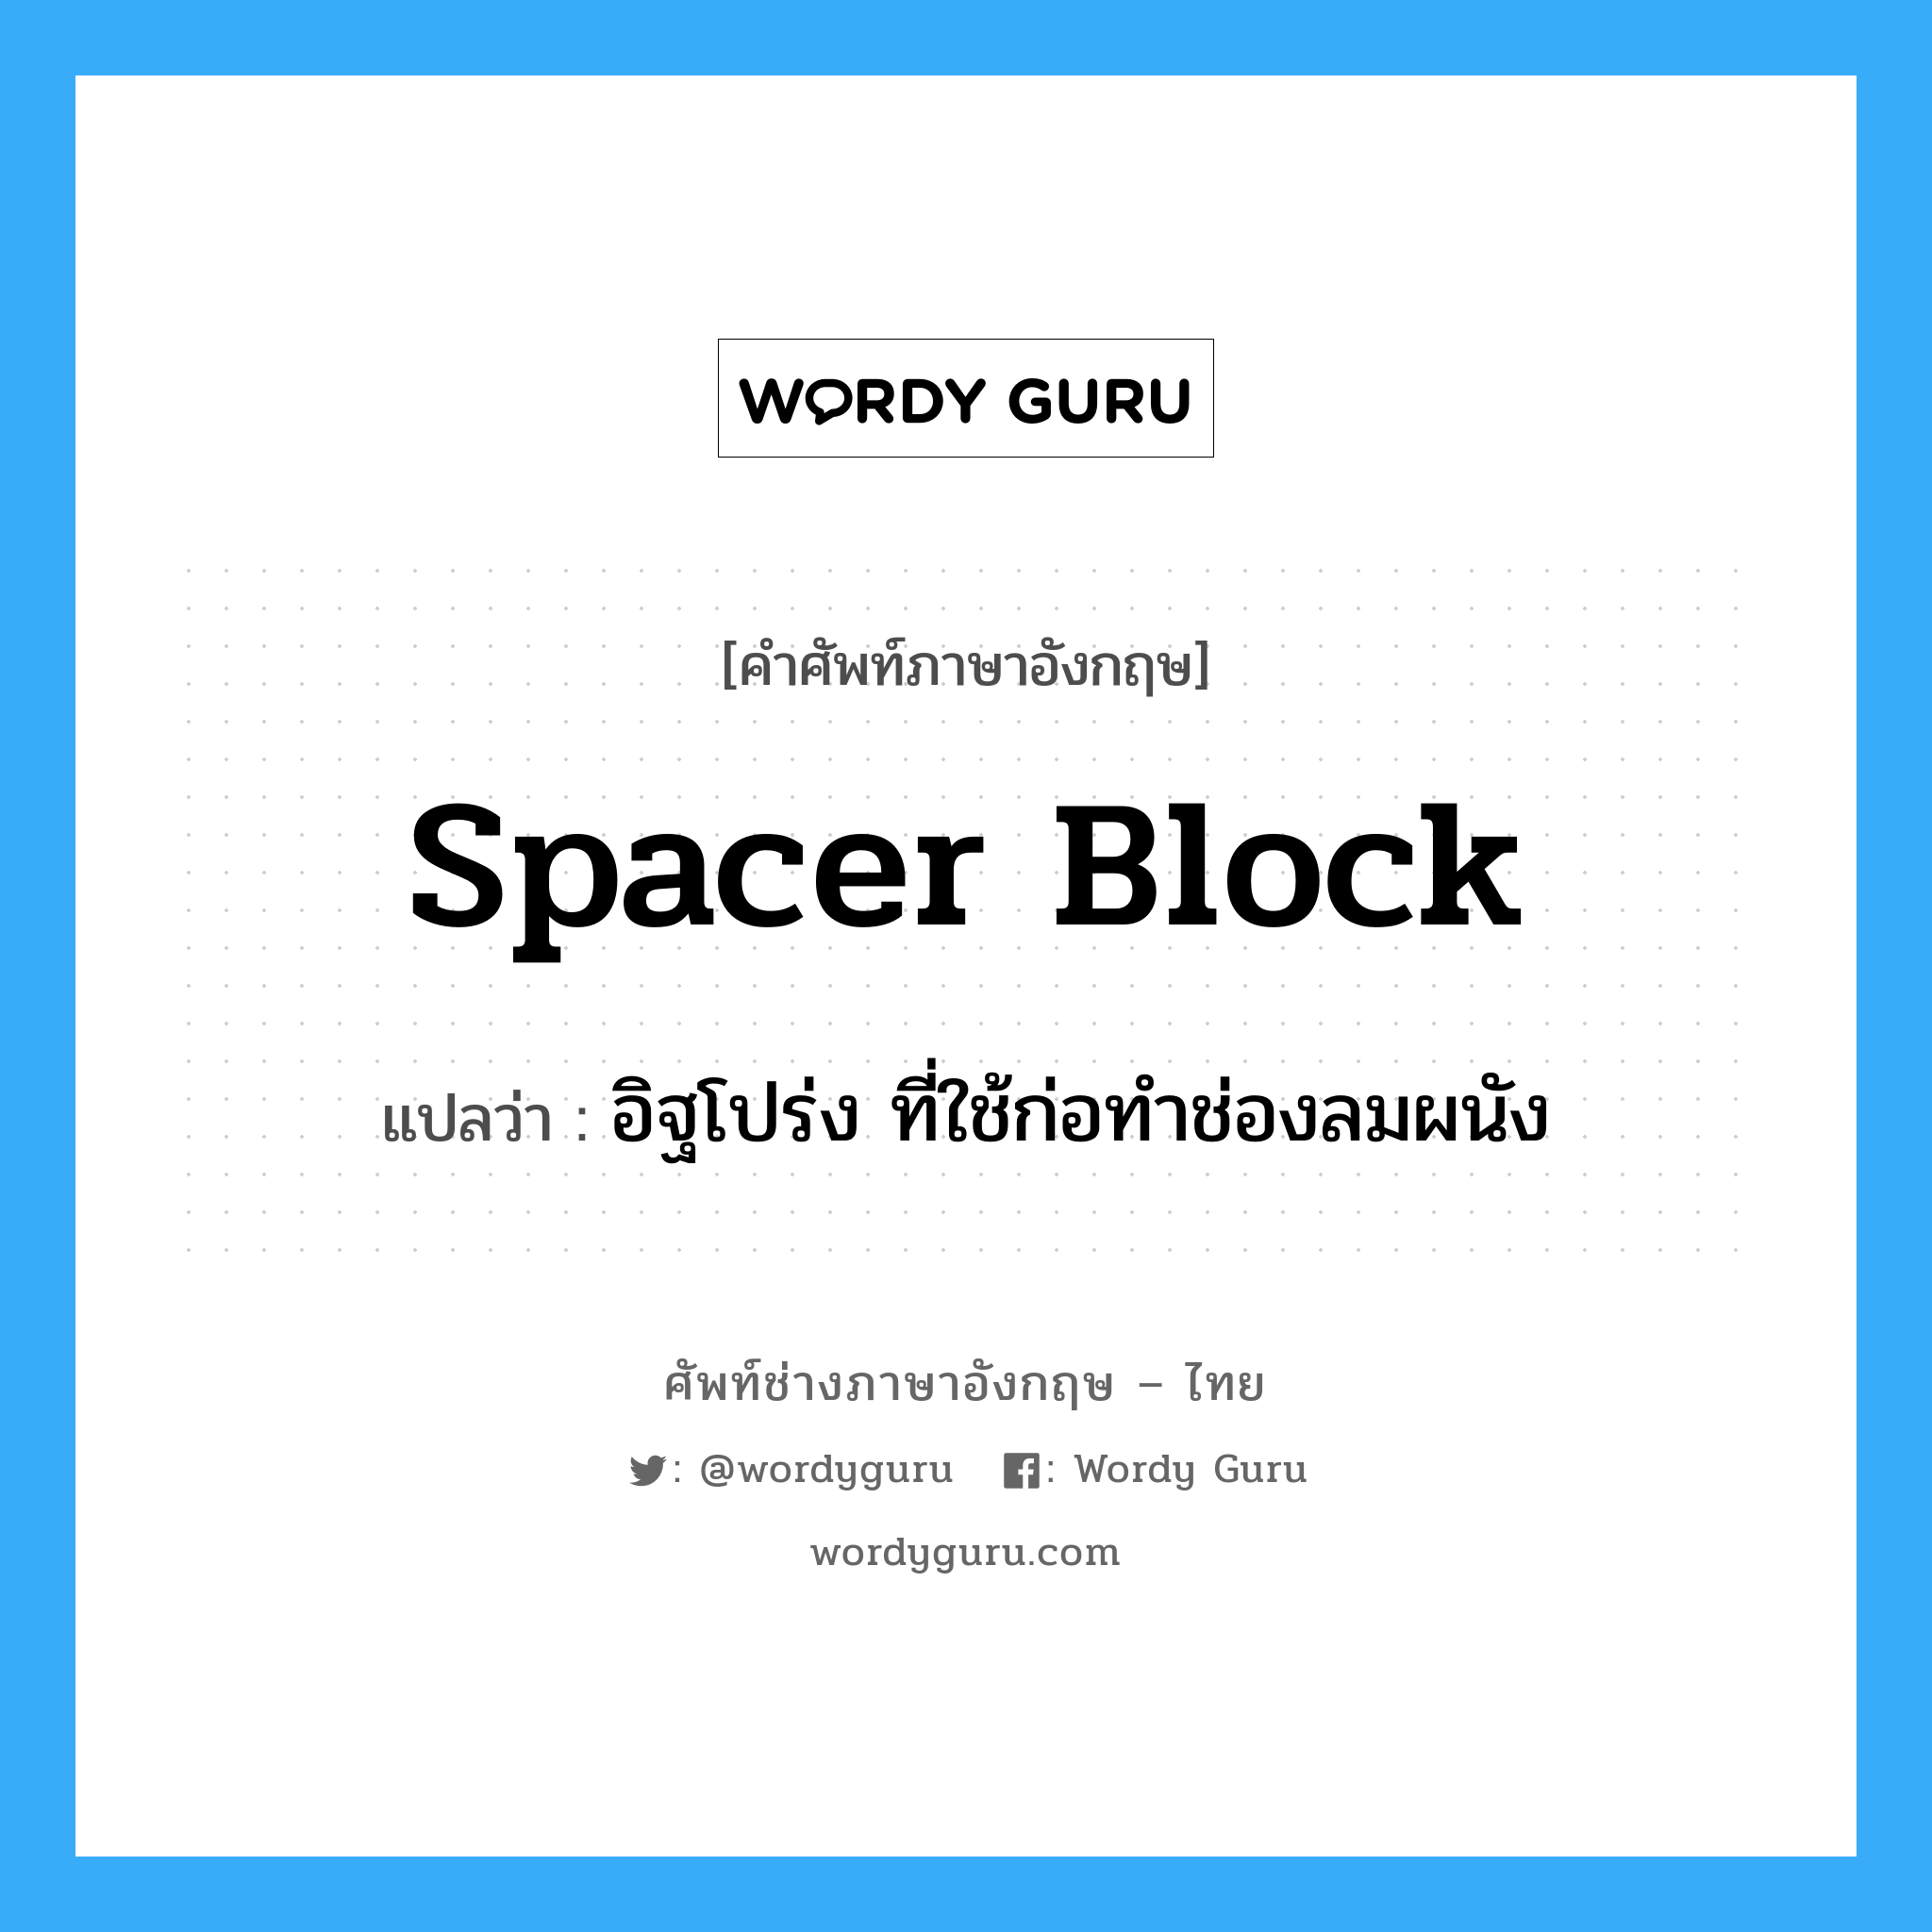 spacer block แปลว่า?, คำศัพท์ช่างภาษาอังกฤษ - ไทย spacer block คำศัพท์ภาษาอังกฤษ spacer block แปลว่า อิฐโปร่ง ที่ใช้ก่อทำช่องลมผนัง